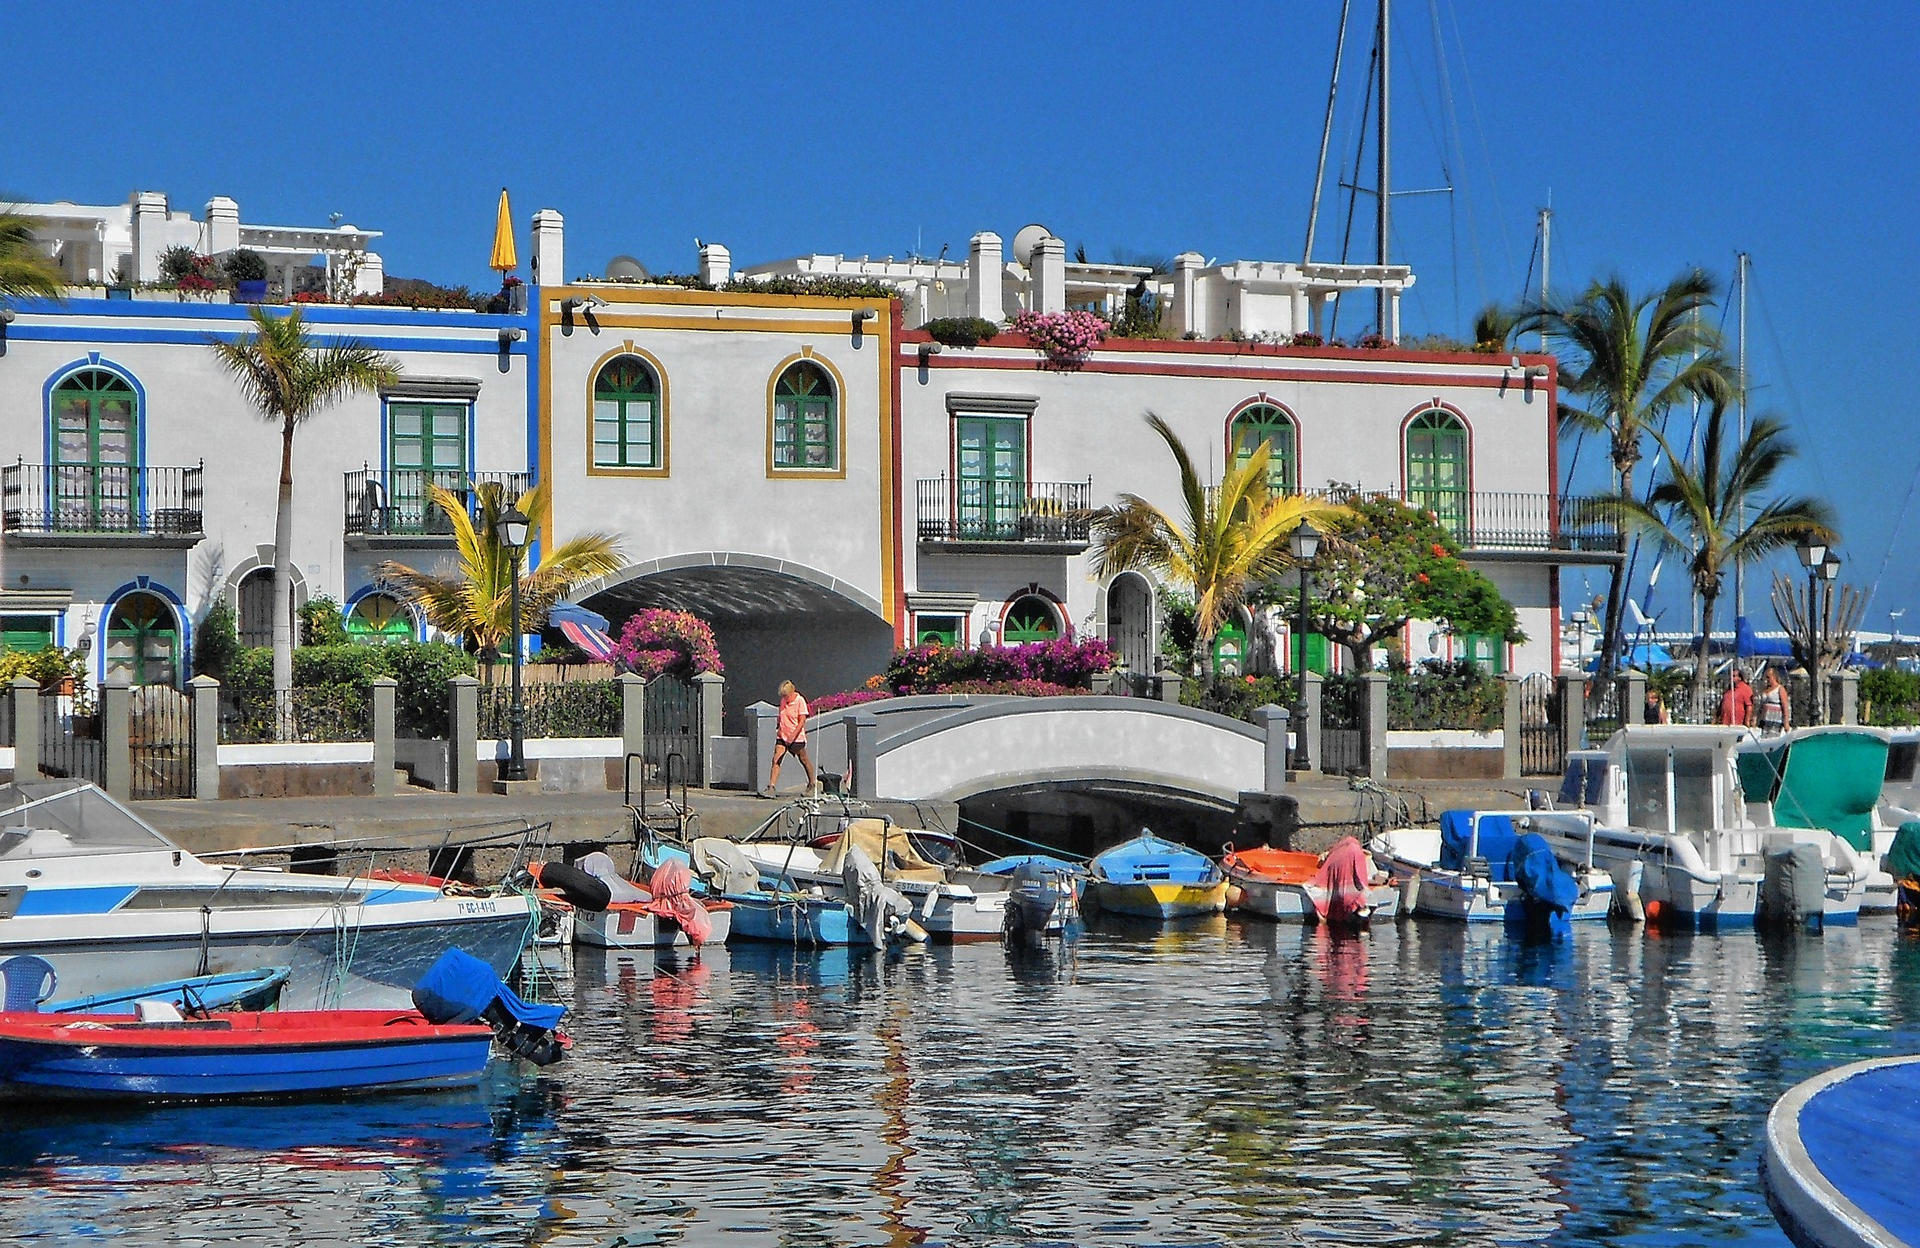 Erholung und Schönheit vereint: Ein traumhafter Urlaub in Puerto de Mogán auf Gran Canaria